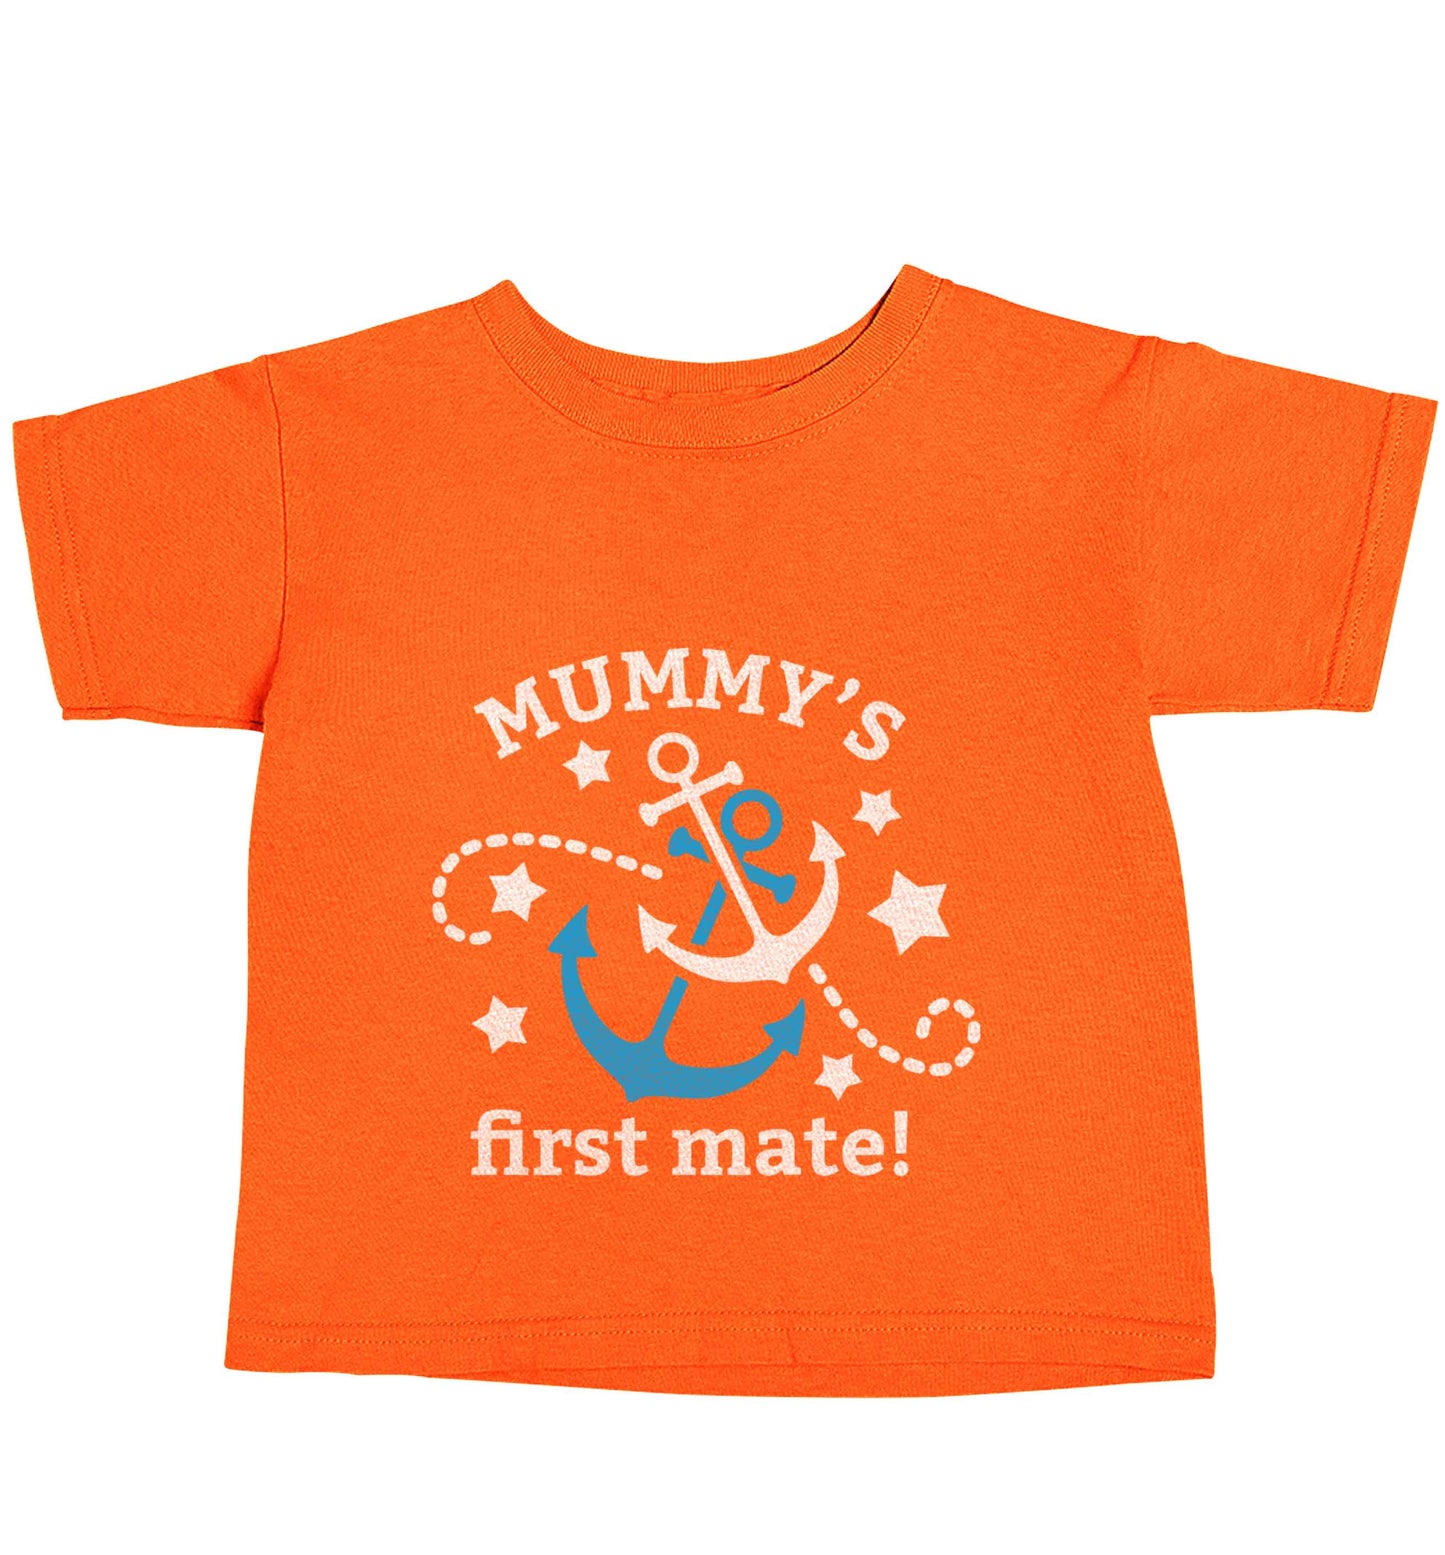 Mummy's First Mate orange baby toddler Tshirt 2 Years